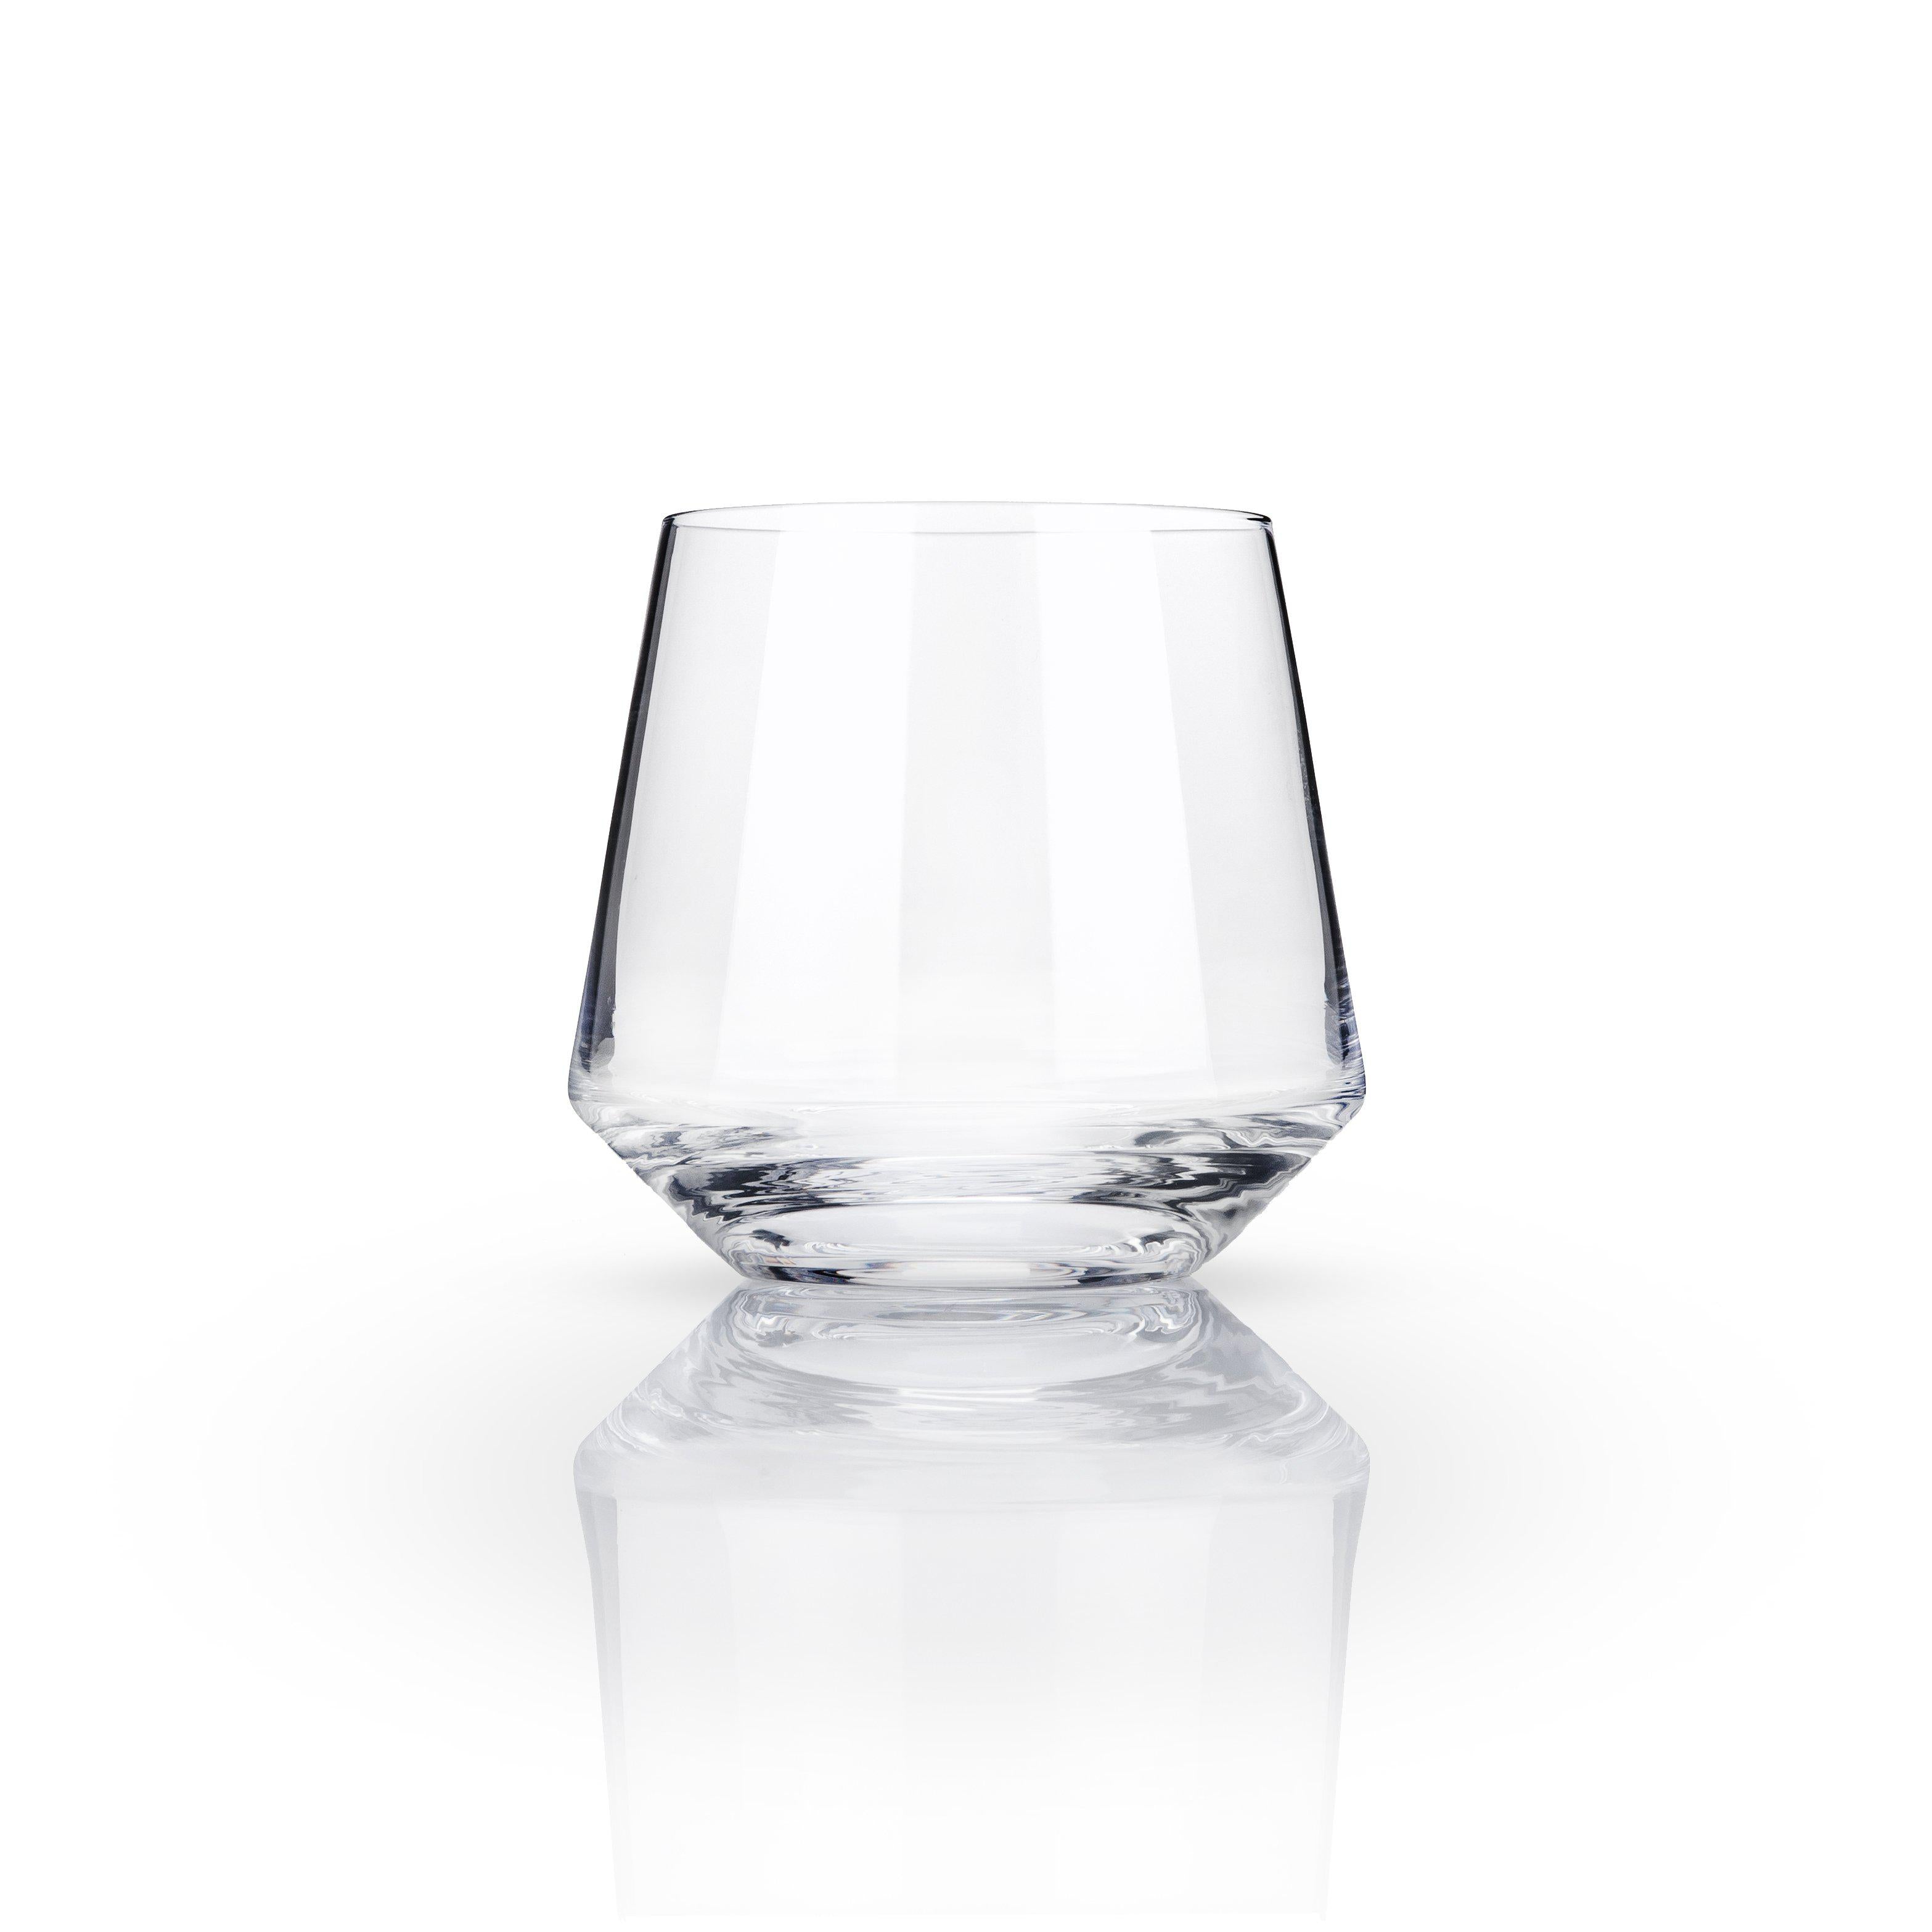 https://dramson.com/cdn/shop/products/cocktail-glasses-angled-crystal-cocktail-tumblers-set-of-2-viski-4.jpg?v=1620837614